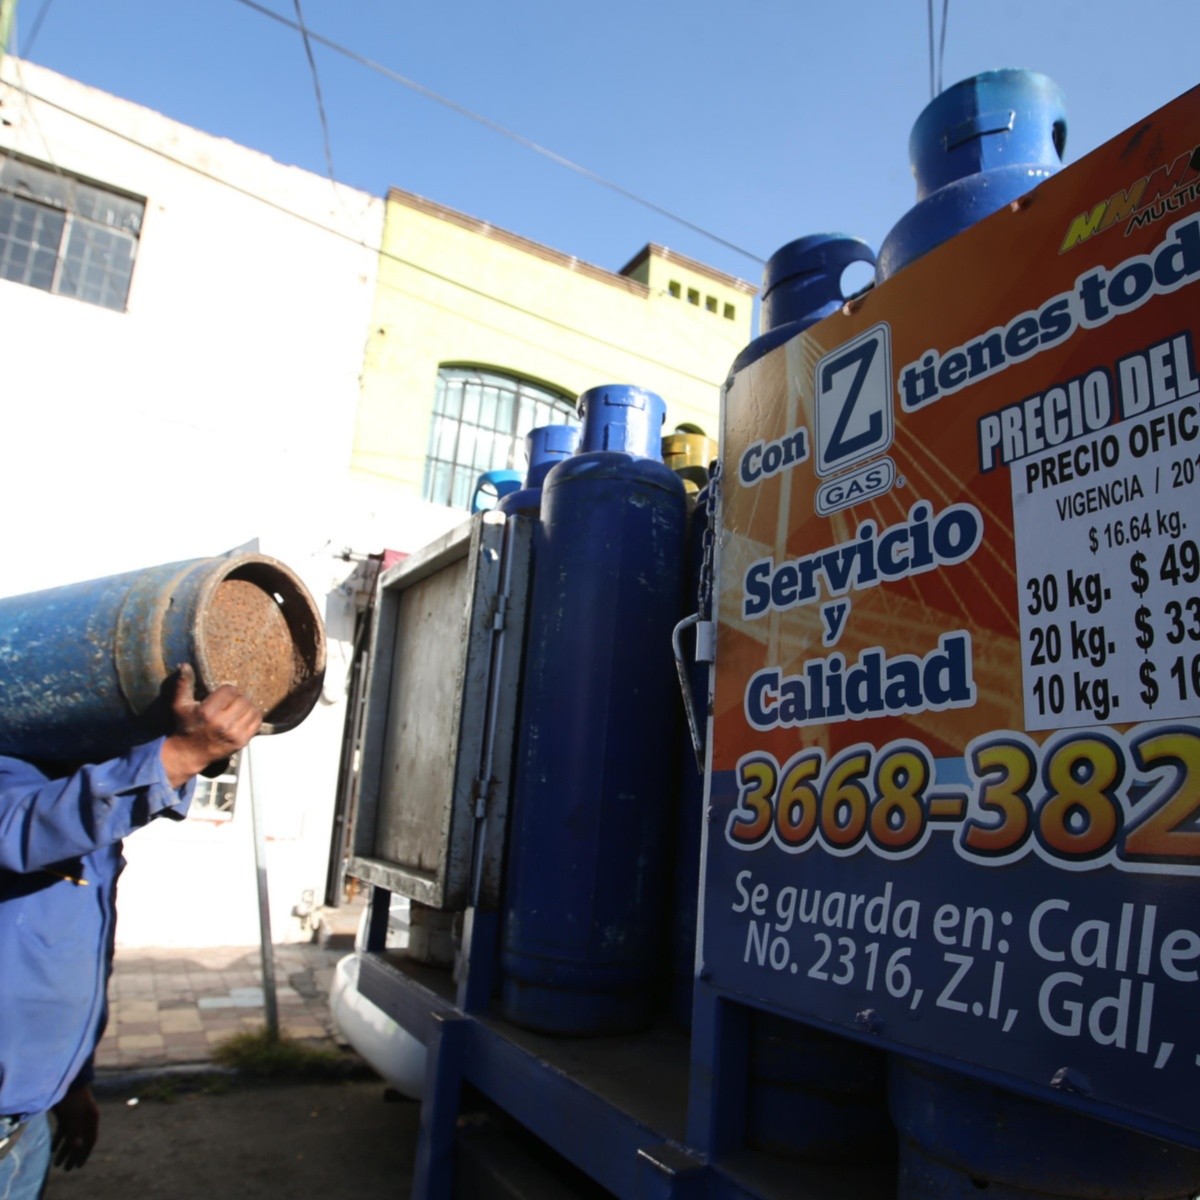 El Cilindro De Gas Lp Ya Cuesta Mas De 550 Pesos El Informador Noticias De Jalisco Mexico Deportes Entretenimiento